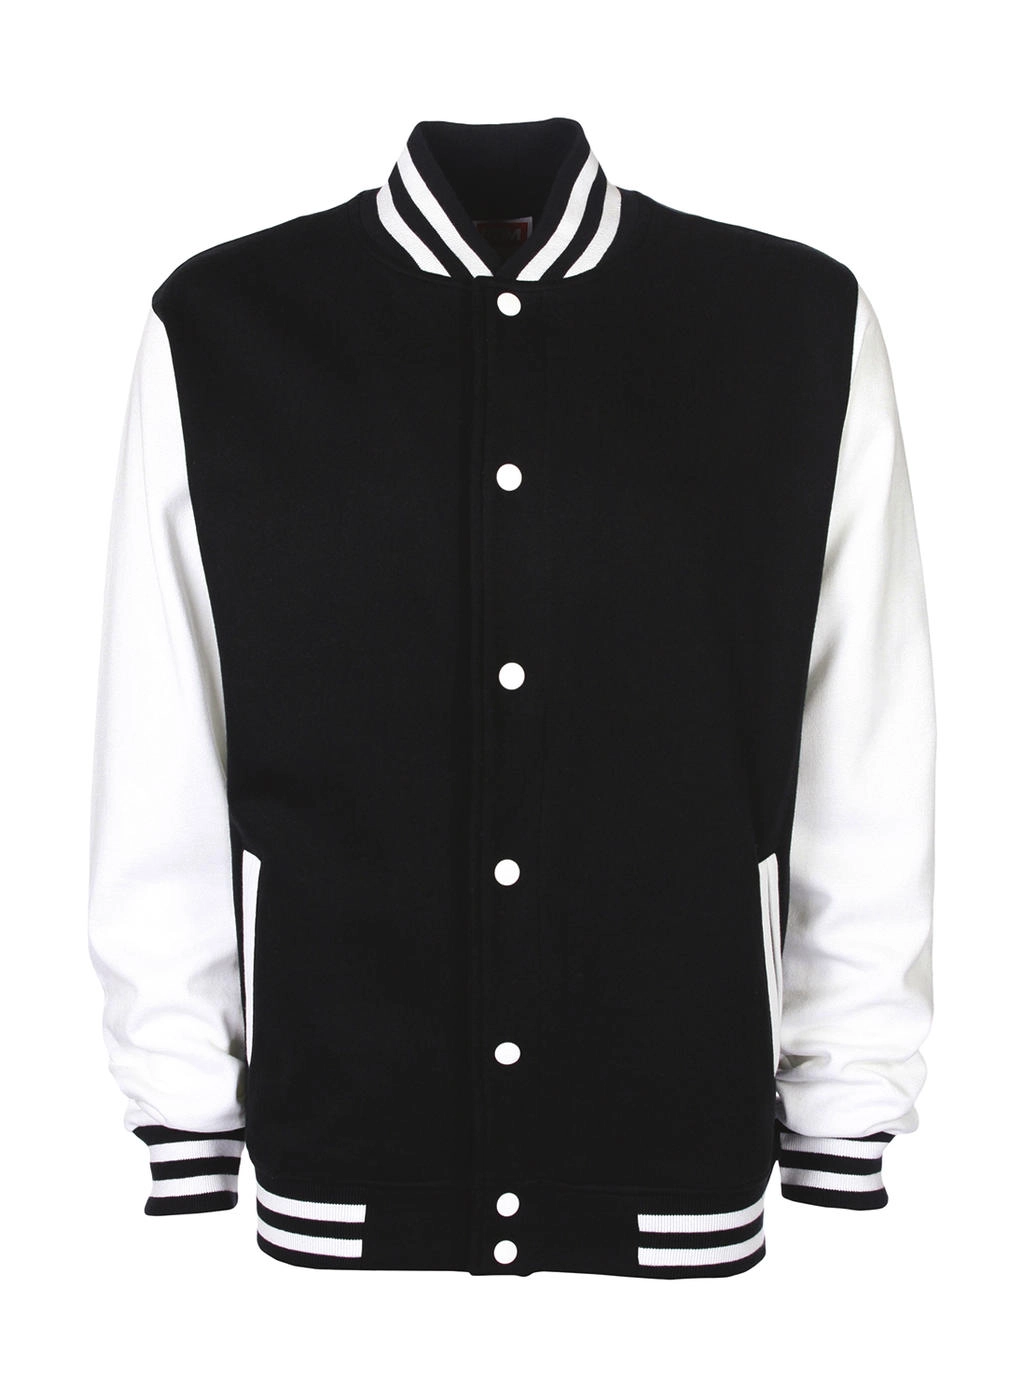 Varsity Jacket zum Besticken und Bedrucken in der Farbe Black/White mit Ihren Logo, Schriftzug oder Motiv.